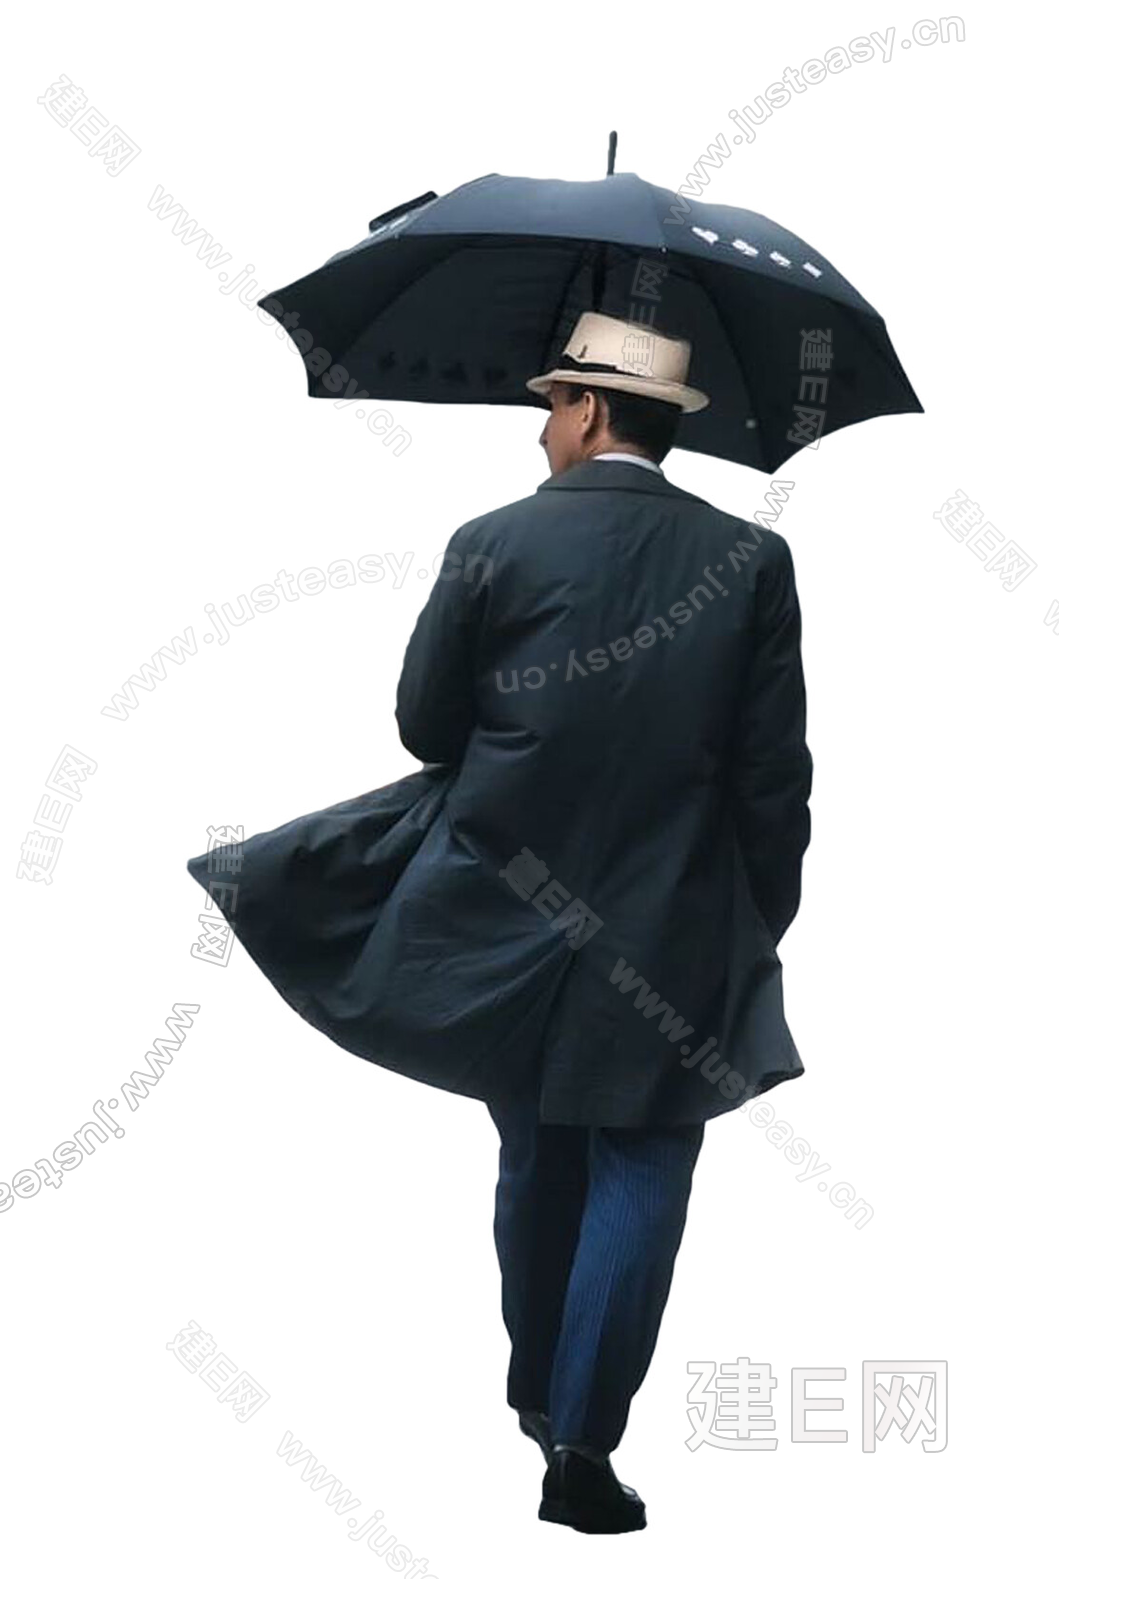 王俊凯雨中撑伞大片 绅士又浪漫文艺感十足|王俊|雨中-娱乐百科-川北在线